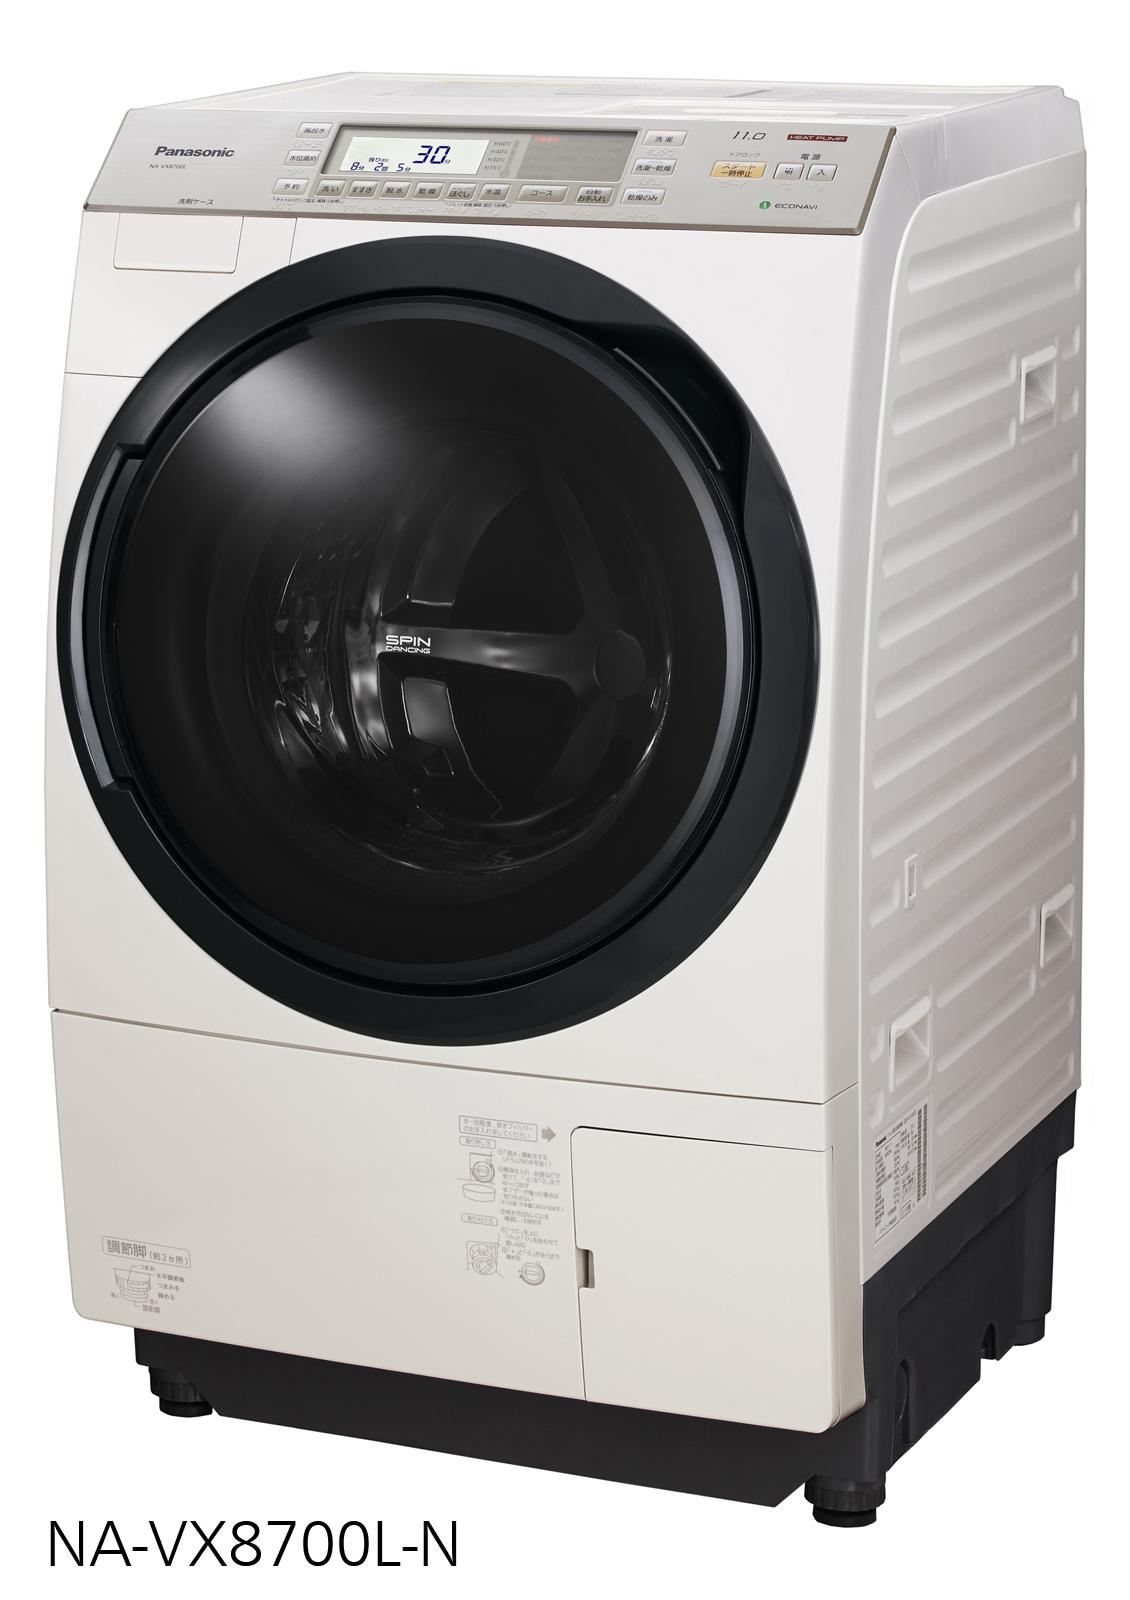 ななめドラム洗濯乾燥機 NA-VX9700L他 4機種を発売 | 個人向け商品 